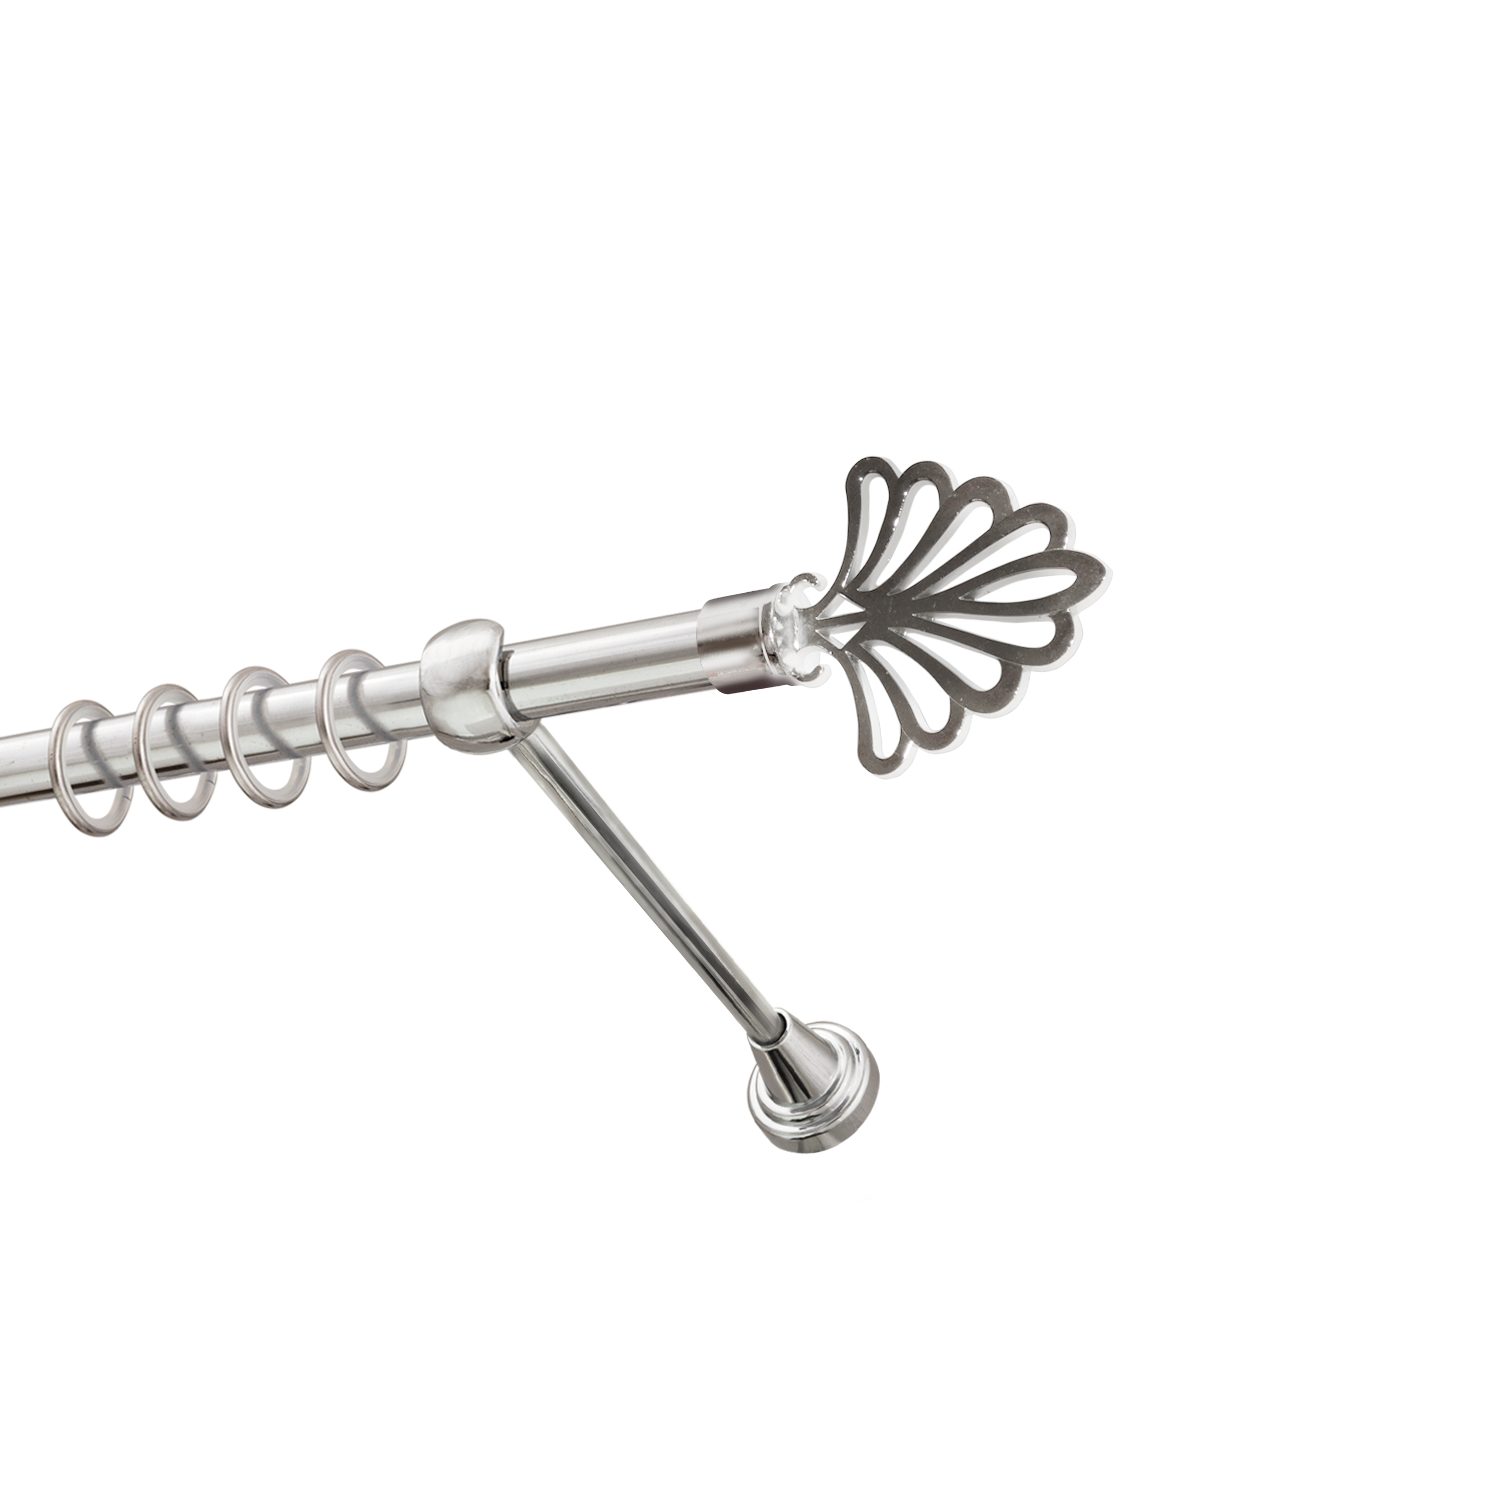 Металлический карниз для штор Бутик, однорядный 16 мм, серебро, гладкая штанга, длина 140 см - фото Wikidecor.ru